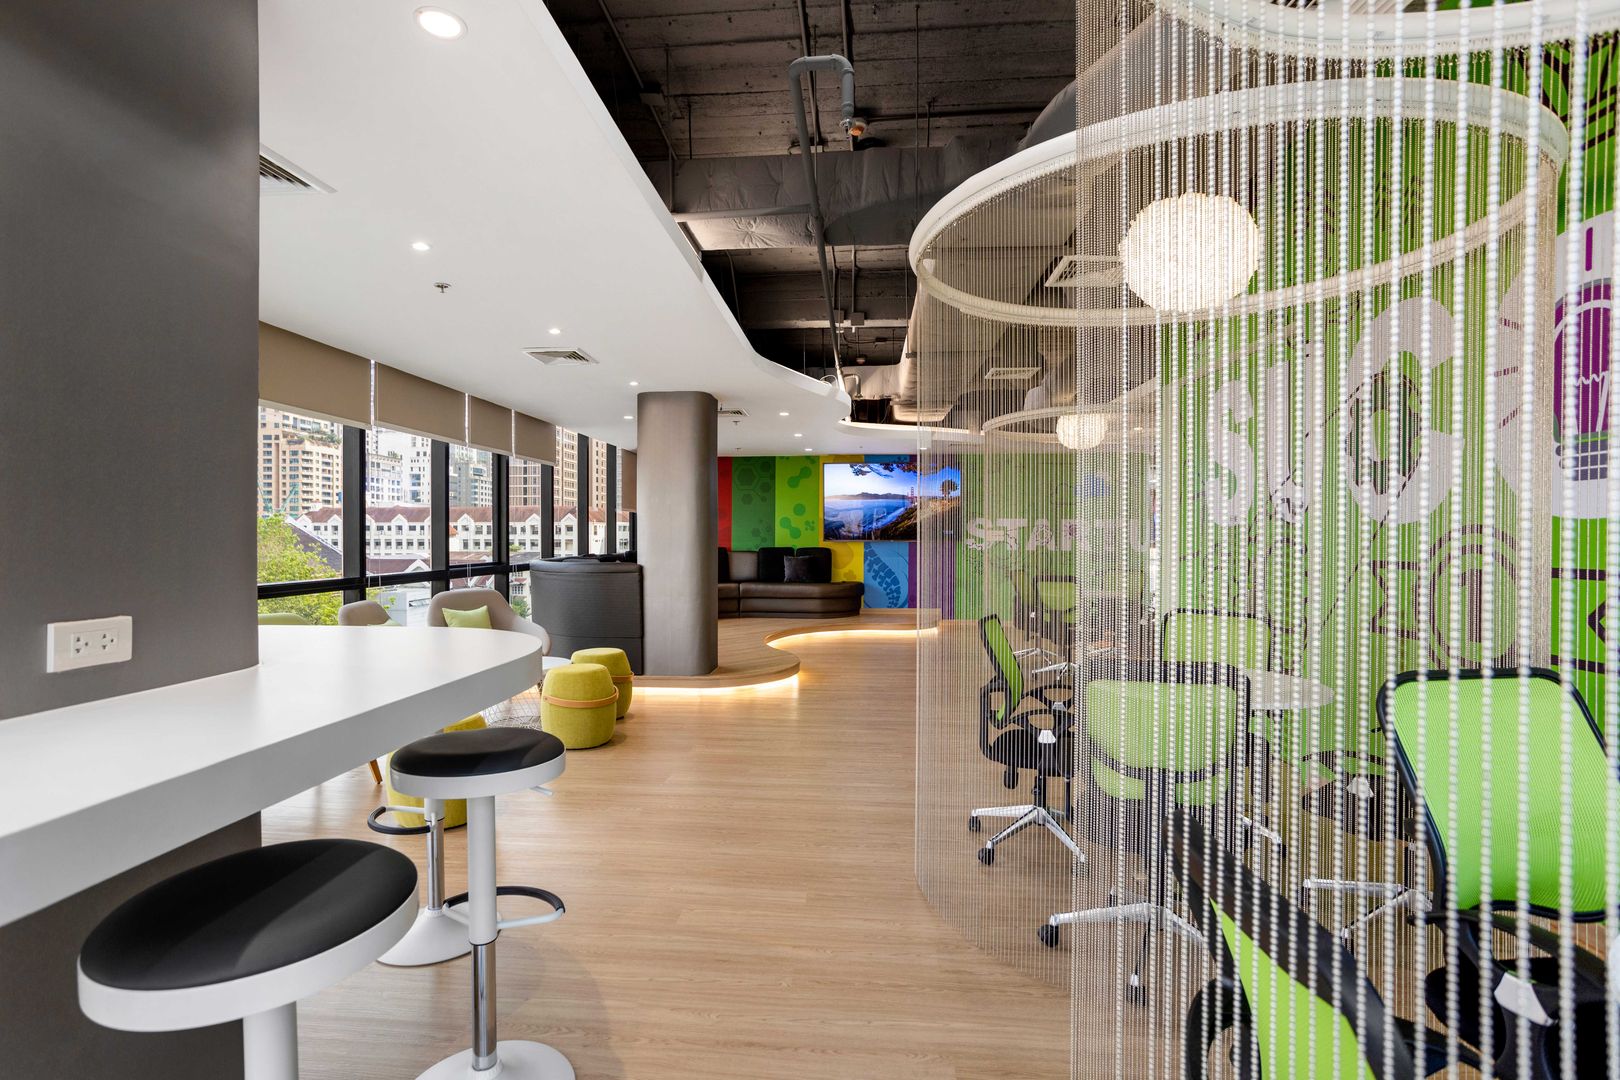 ์Nutrition Gel ( The Real) Modernize Design + Turnkey พื้นที่เชิงพาณิชย์ ออกแบบตกแต่งภายใน , ตกแต่งสำนักงาน , interiordesignbangkok , ออกแบบออฟฟิศ , ตกแต่งโมเดิร์น , officedesign,อาคารสำนักงาน